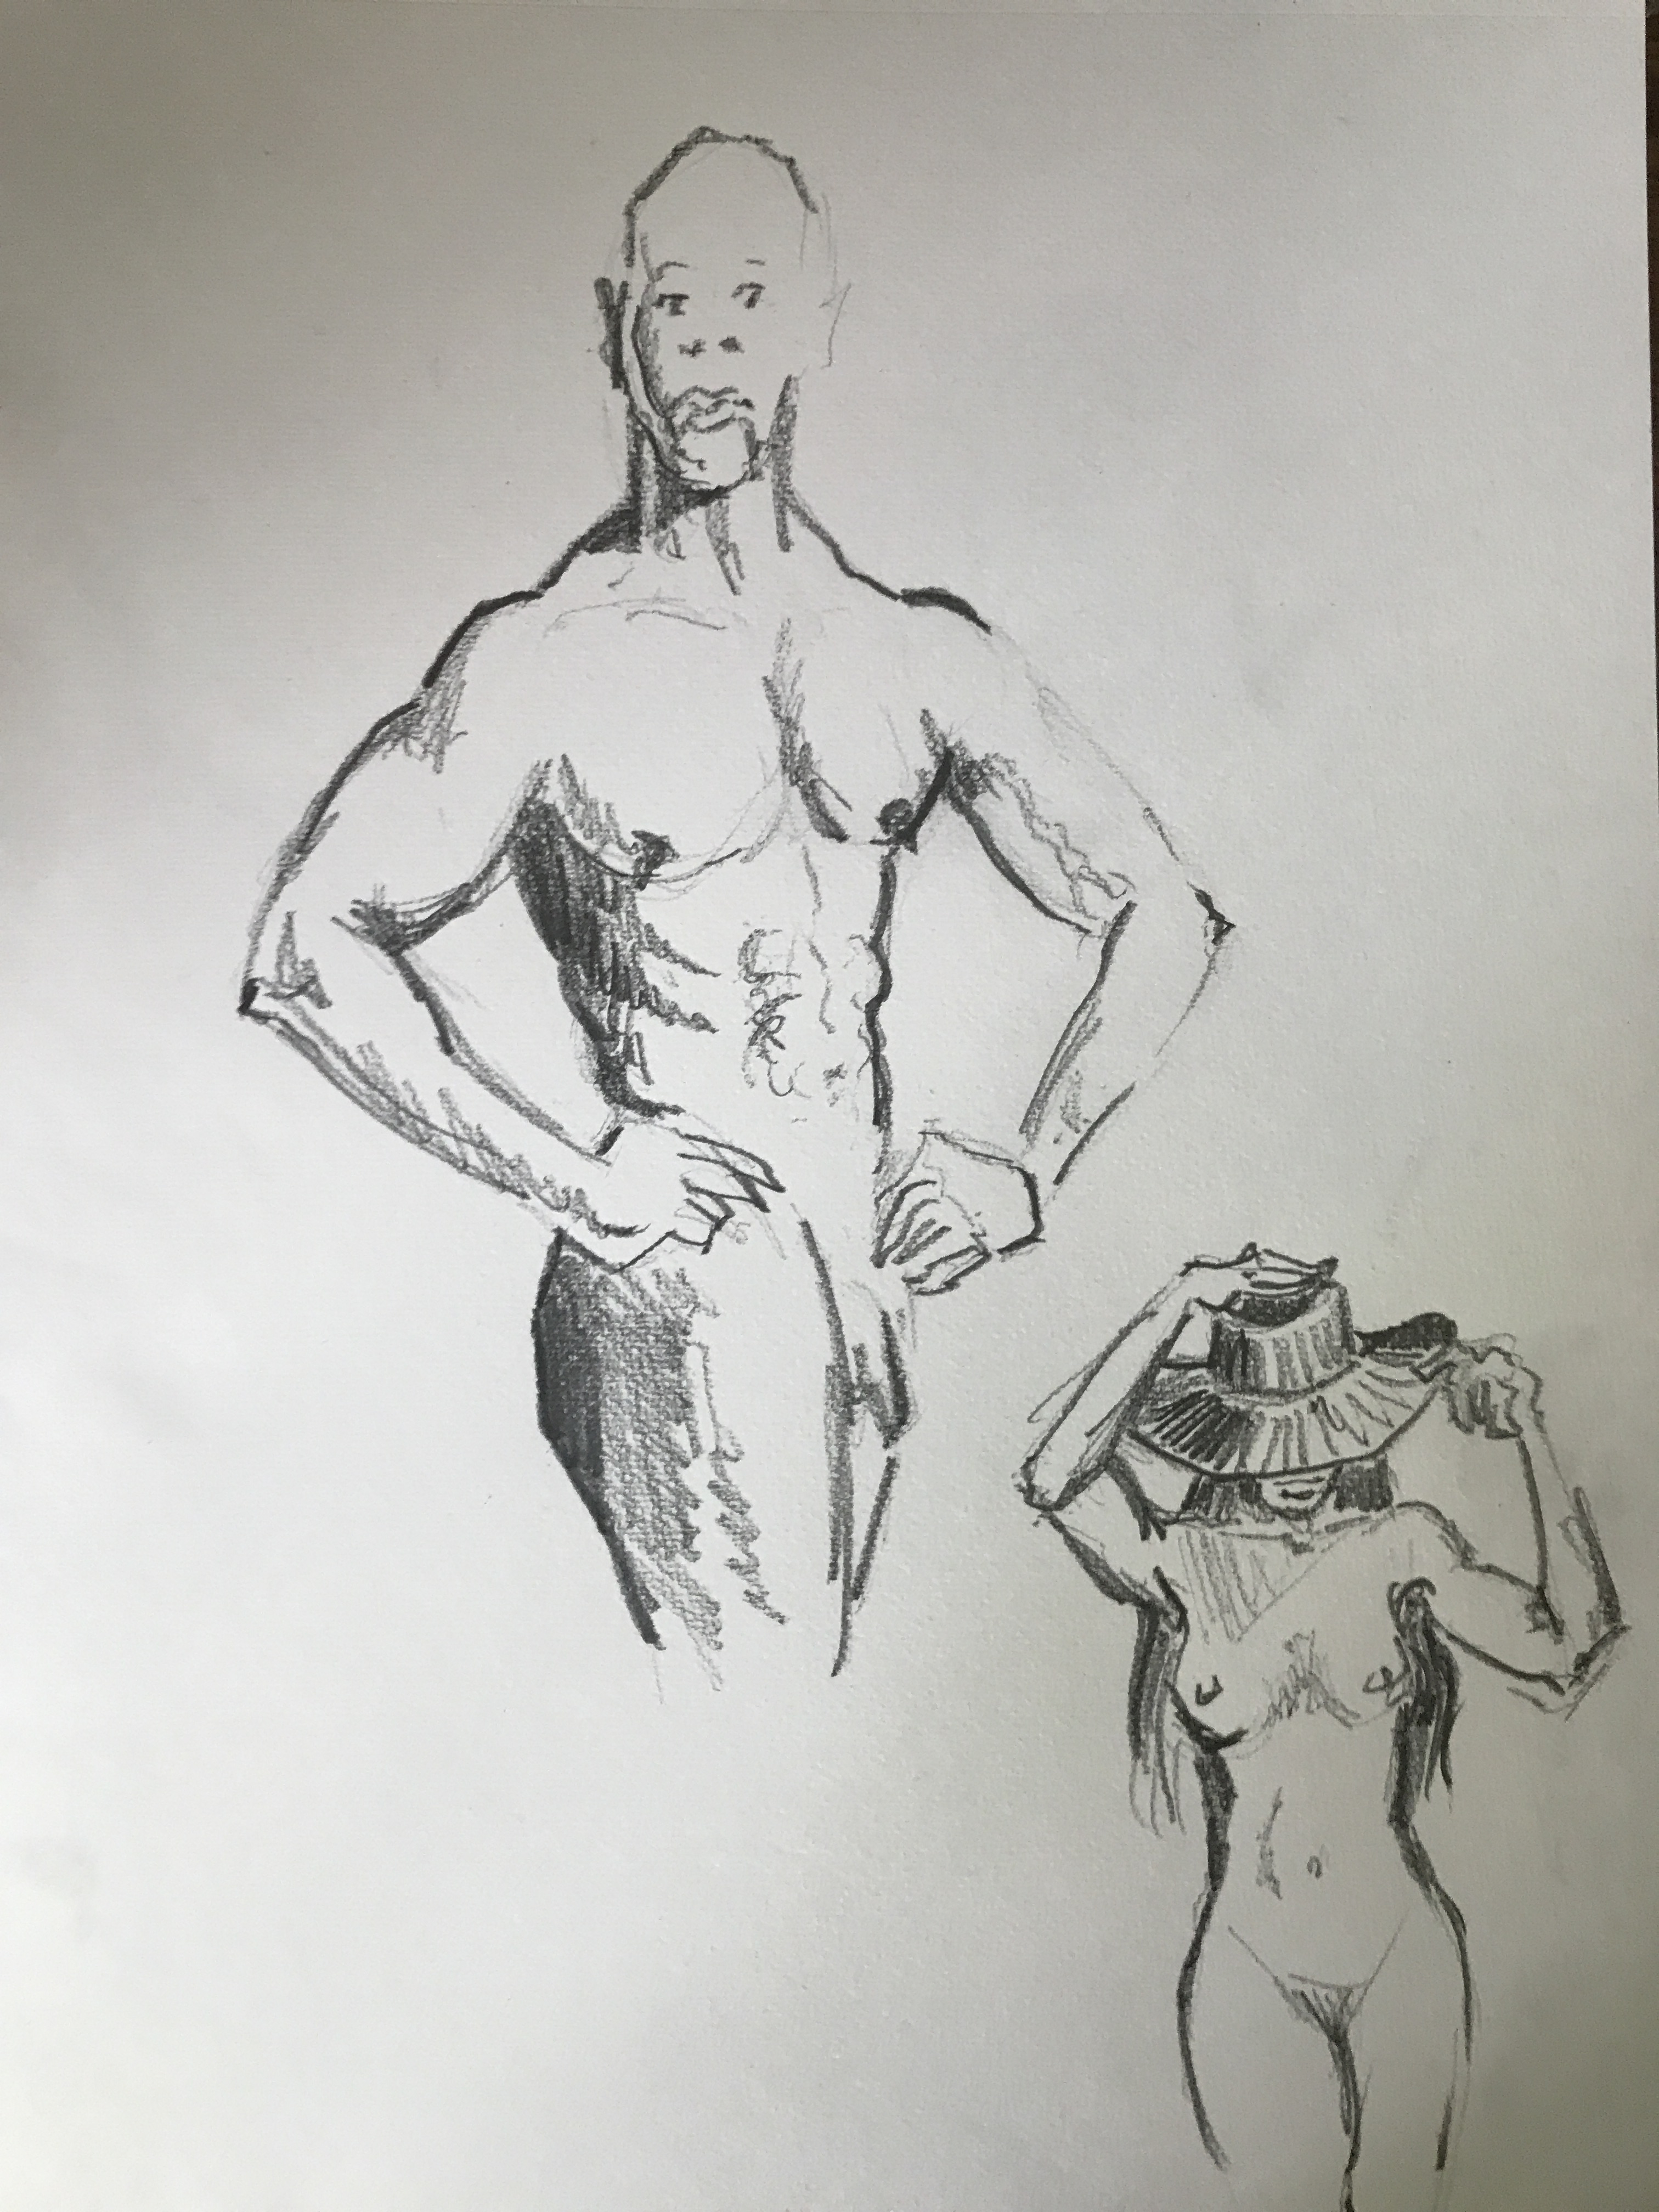  Croquis Ãtude anatomie humaine graphite crayonnÃ©, rÃ©alisÃ© dans notre atelier de dessin Paris  cours de dessin 